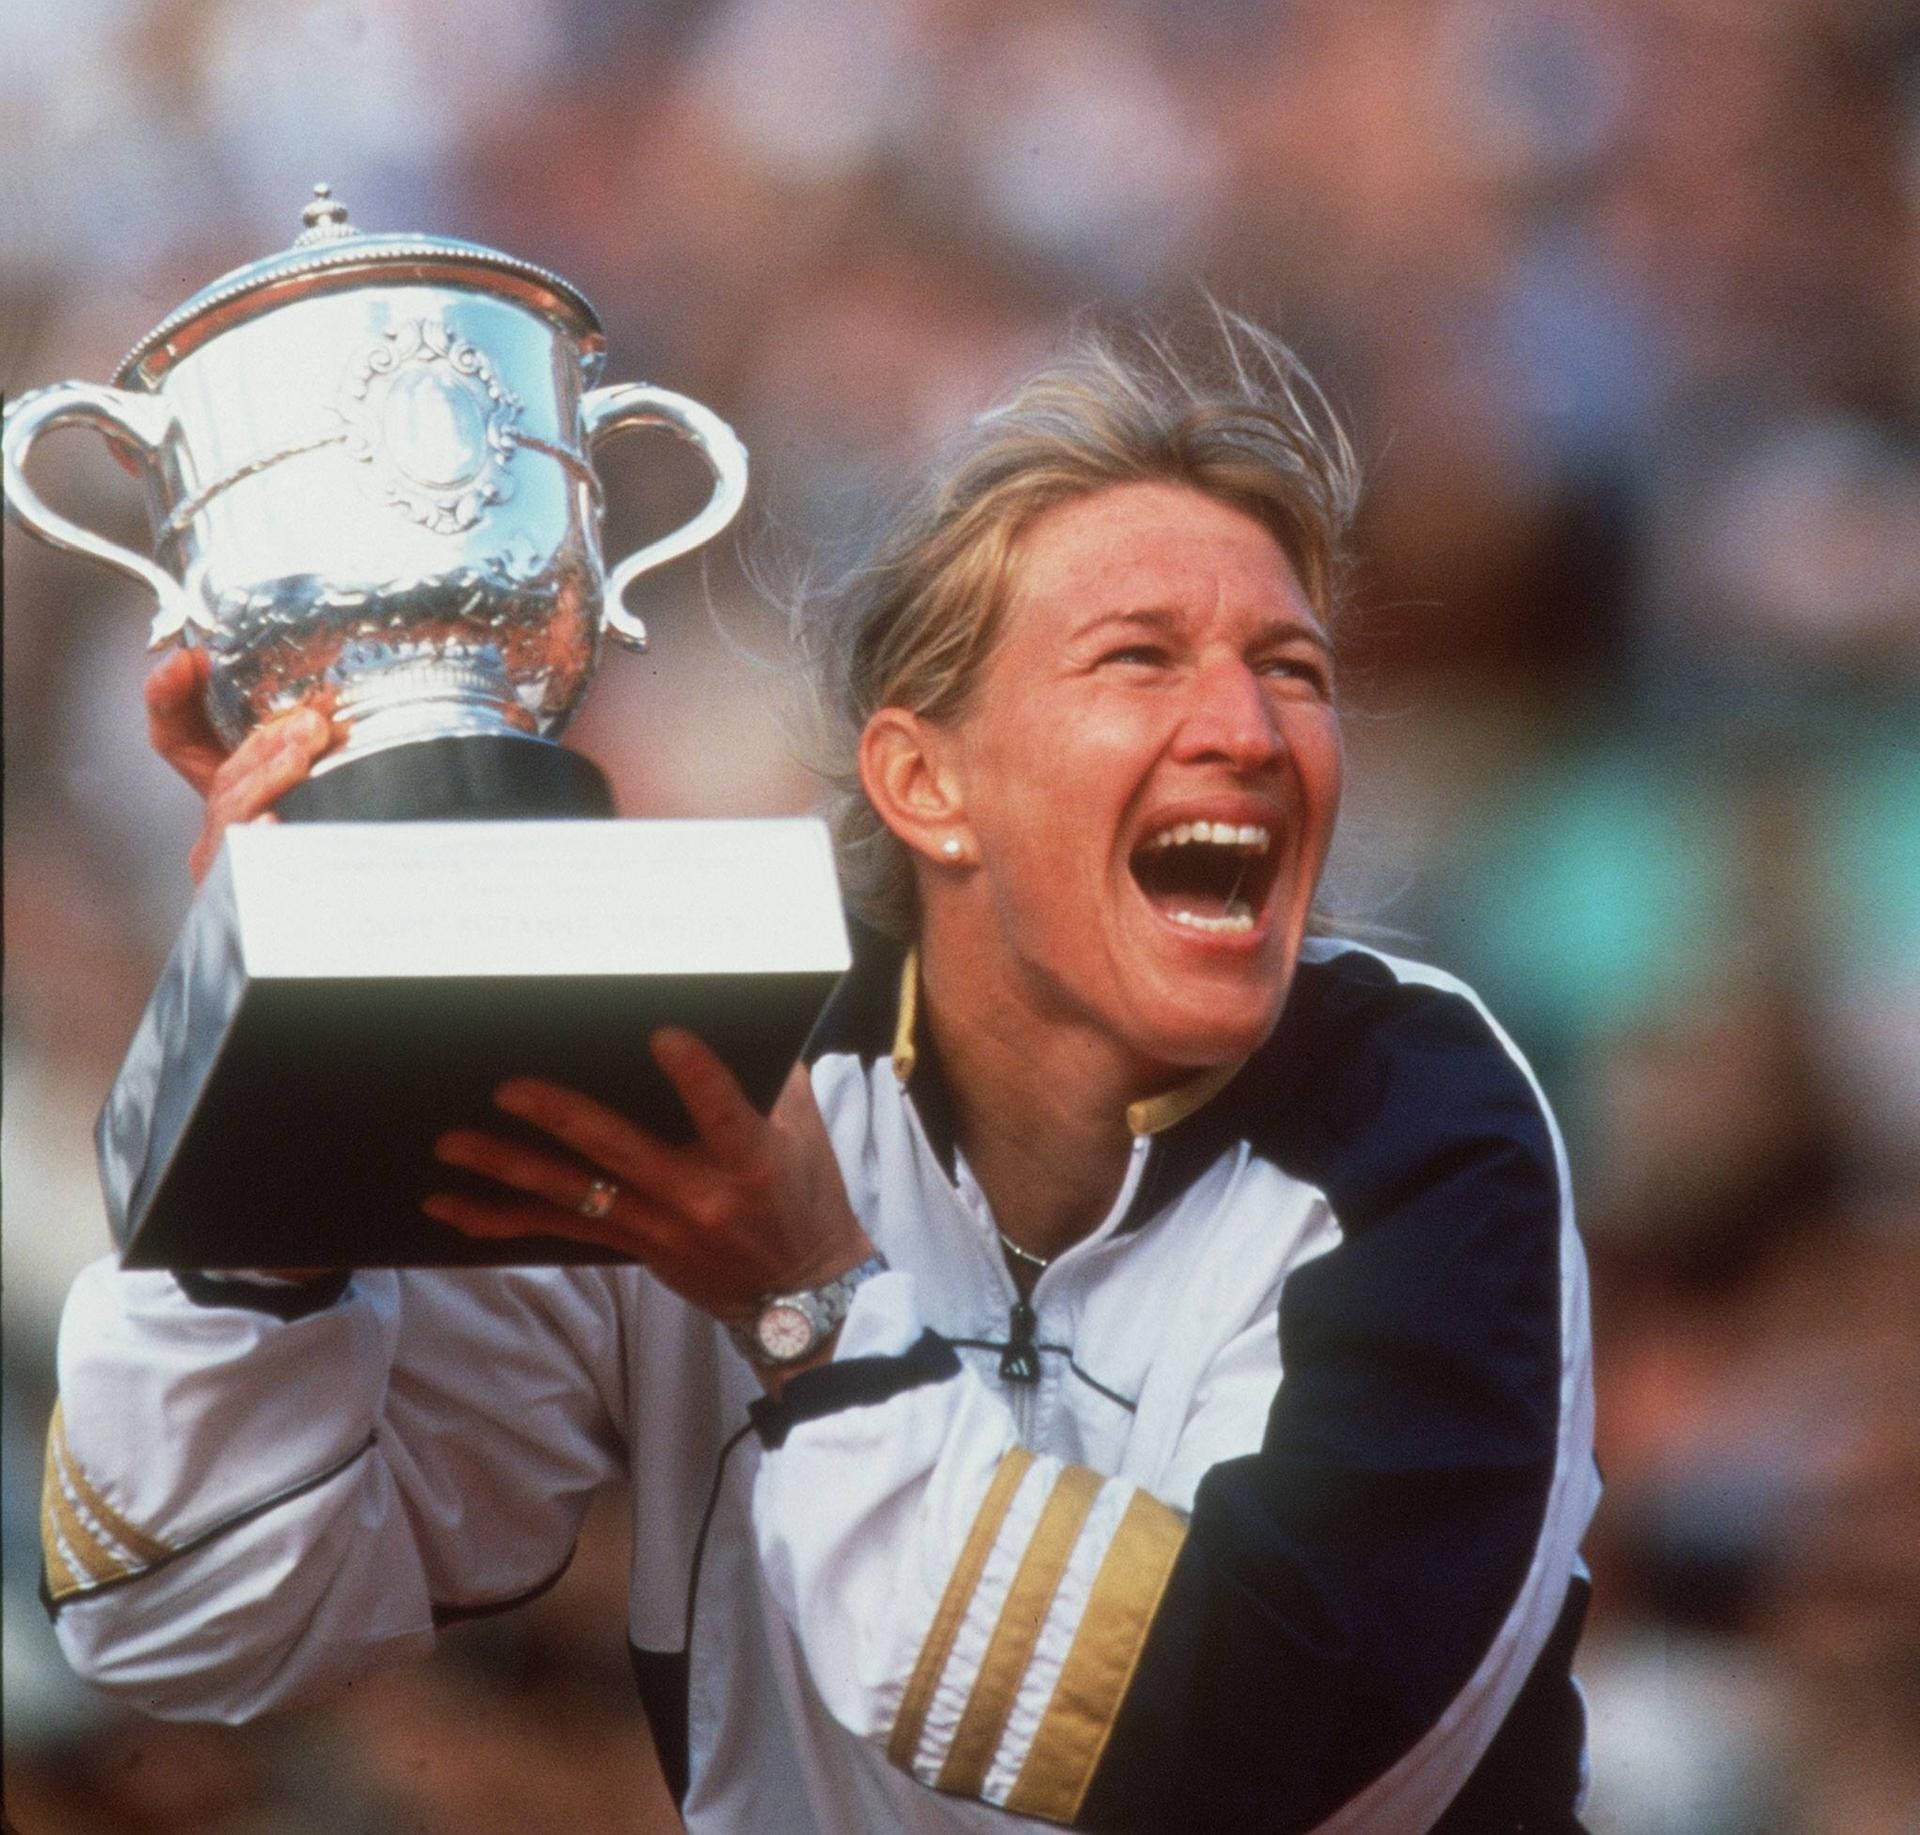 1999 gewinnt Graf noch einmal die French Open, nach schwieriger Zeit fällt der Siegerjubel umso euphorischer aus. Es ist ihr 107. Turniersieg.